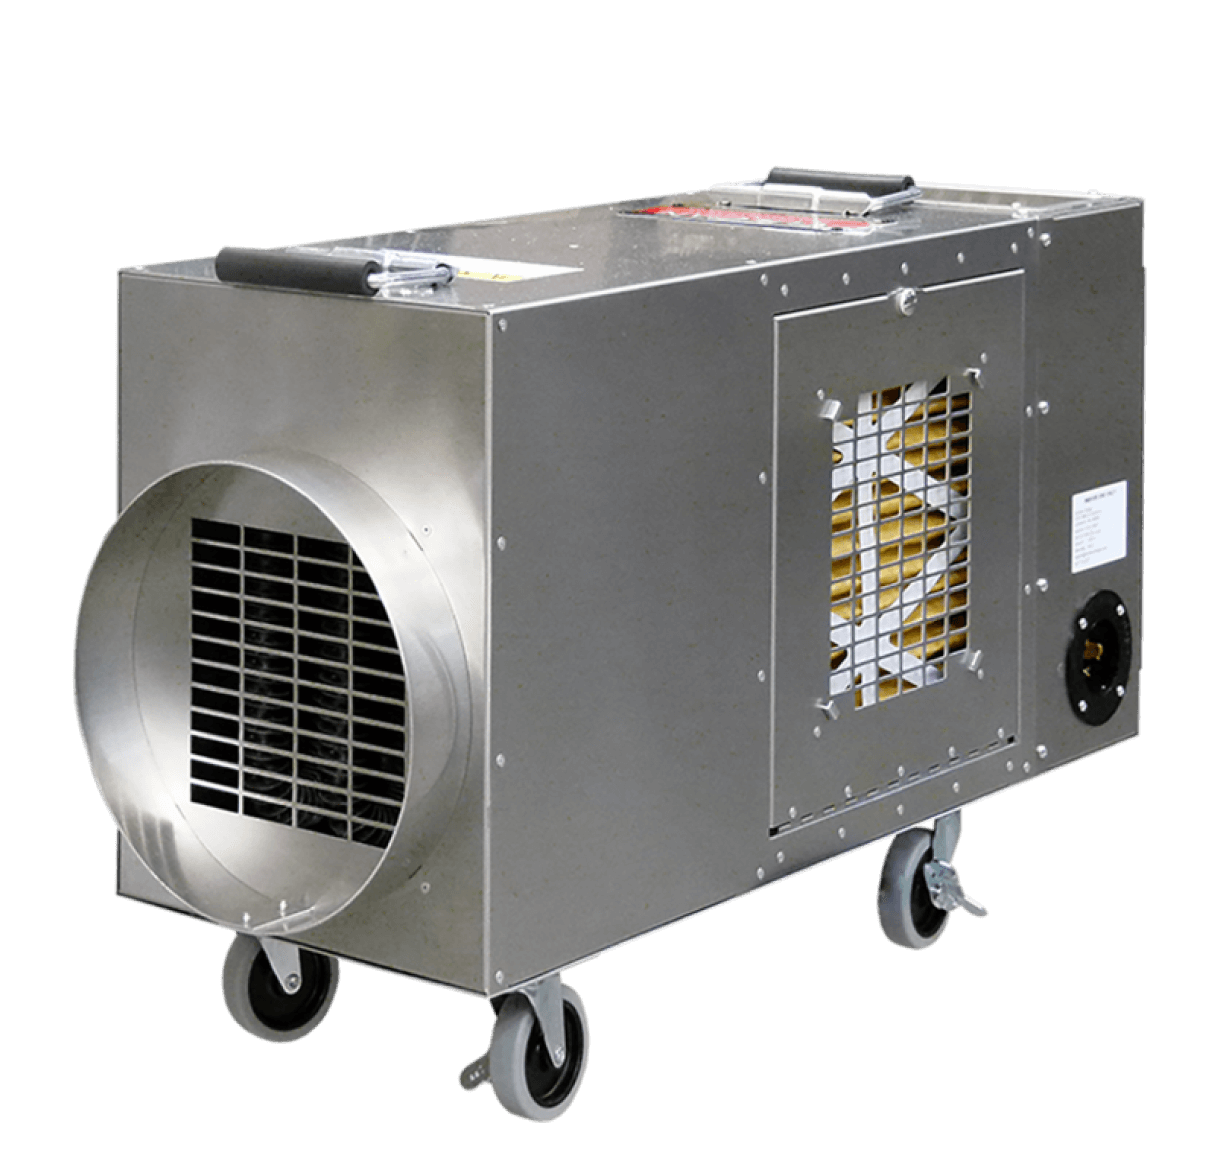 Leister VULCAN SYSTEM Hot Air Blower - Manufacturing - STANMECH  Technologies Inc.